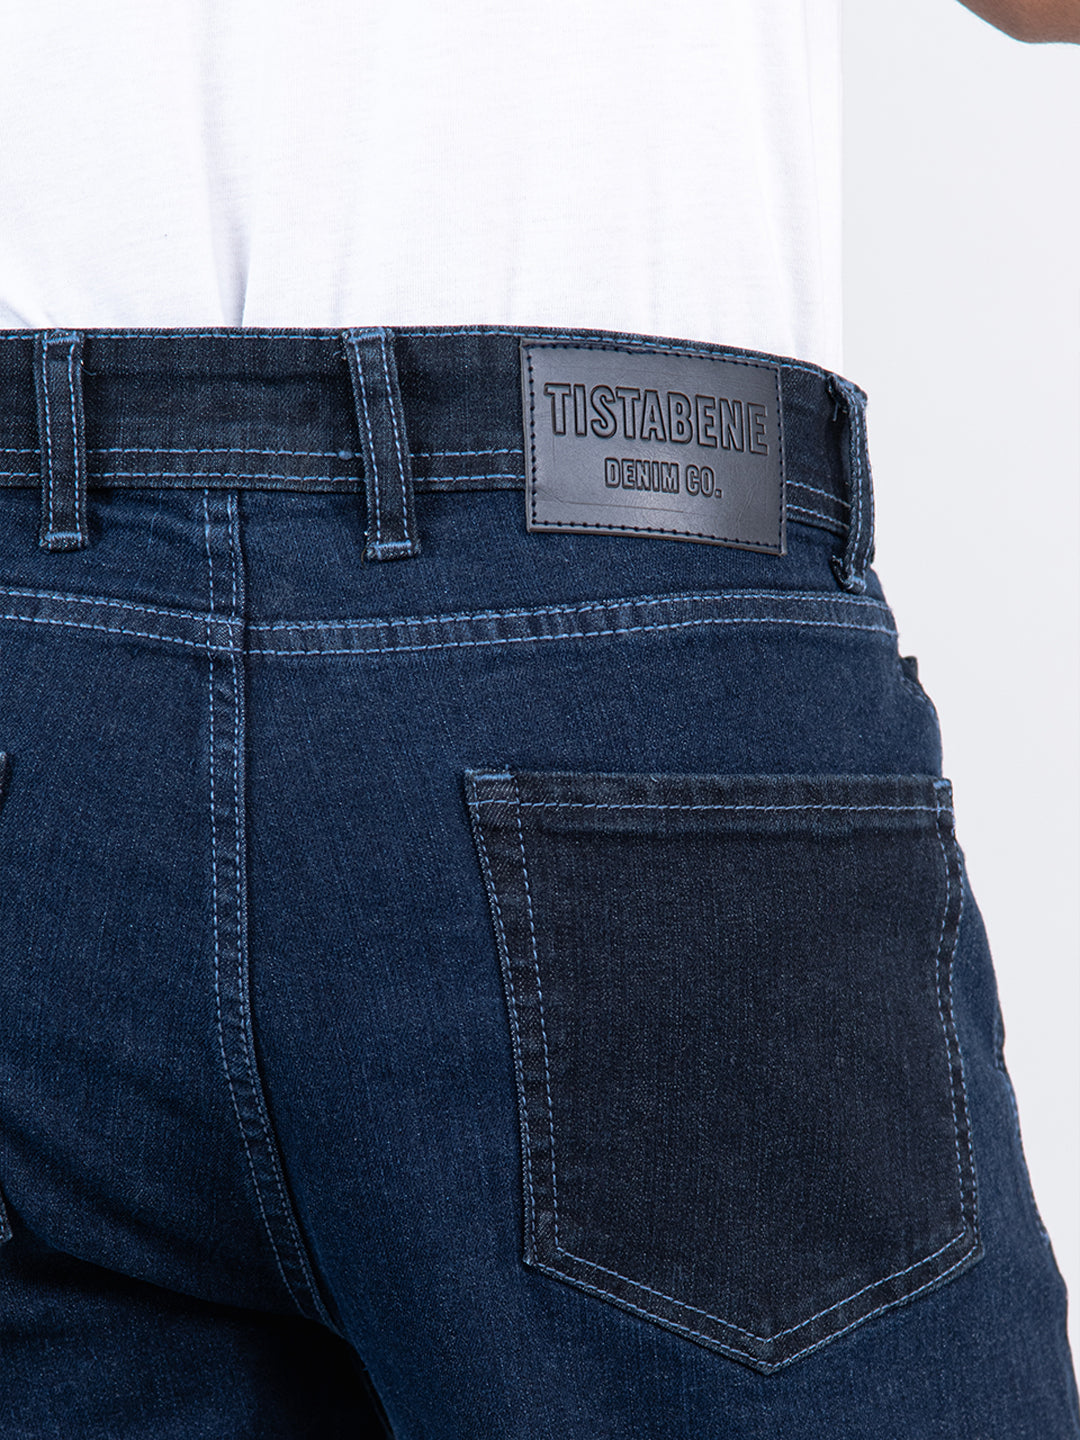 Jeans & Pants | Dashing Black Denim Jeans Brand Matrix | Freeup